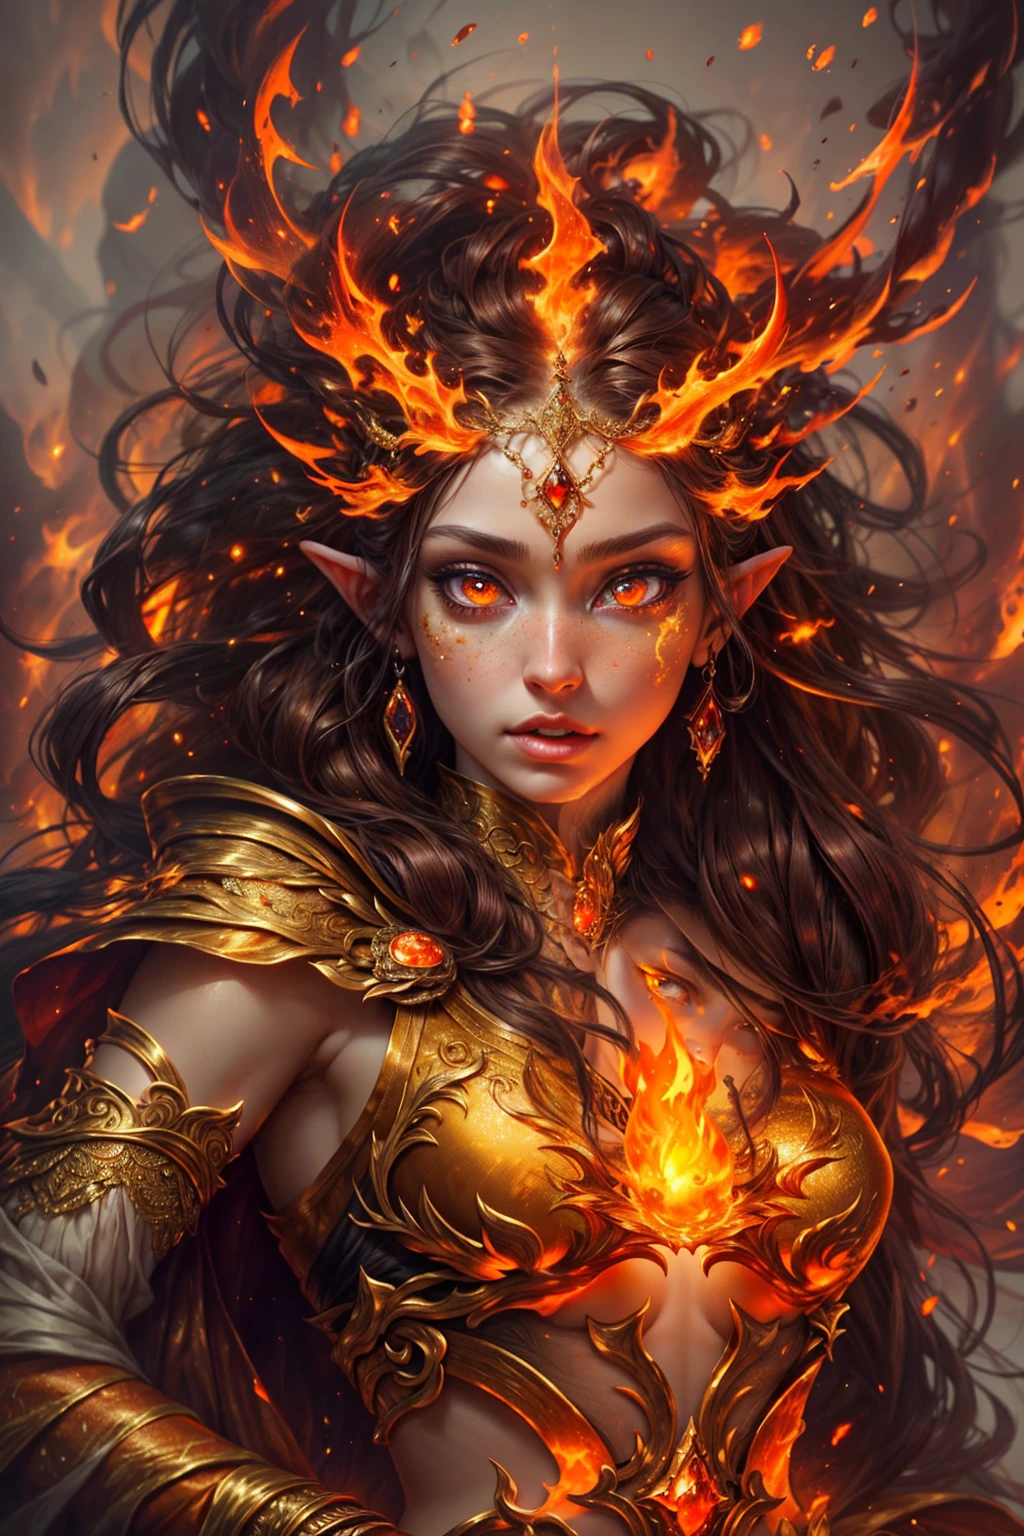 这 (现实的幻想) 艺术包含余烬, 真正的火焰, 真正的热量, 和逼真的火焰. Generate a masterpiece artwork of a  female fire druid 和 large (((橙色和金色))) 眼睛. The fire druid is awe-inspiring 和 beautiful ((realistic fiery 眼睛)) alight 和 confidence and power. 她的五官优雅而轮廓分明, 和 ((柔软蓬松，让人想亲吻)) 嘴唇, 精灵骨骼结构, 和逼真的阴影. Her 眼睛 are important and should be the focal point of this artwork, 和 ((极其逼真的细节, 宏详细信息, 和闪光.)) 她穿着一件闪闪发光的裙子，裙子由逼真的火焰和珠宝制成，在火光中闪闪发光. 一缕缕火焰和烟雾勾勒出礼服精致的胸衣线条. 包括颠簸, 石头, 火红的彩虹色, 发光的余烬, 丝绸、缎子和皮革, 有趣的背景, 以及浓重的奇幻元素. 相机: 利用动态构图技术来增强火焰的真实感.